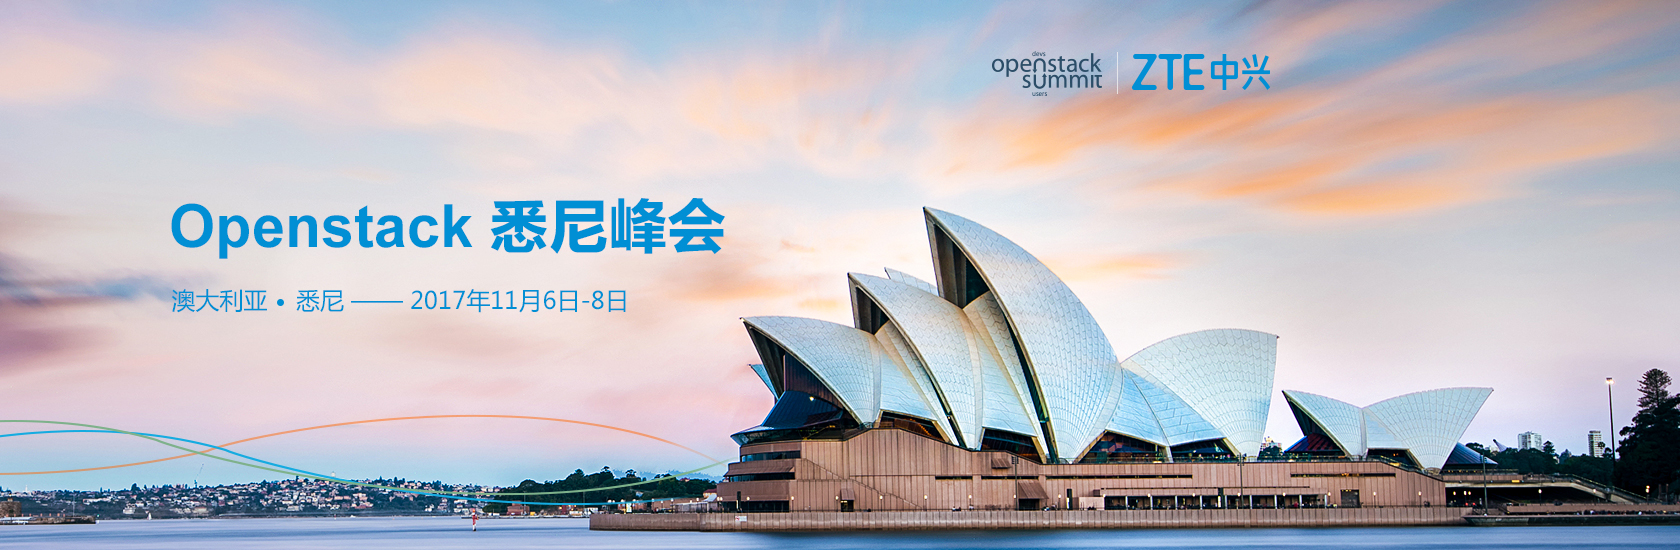 中兴Openstack 悉尼峰会